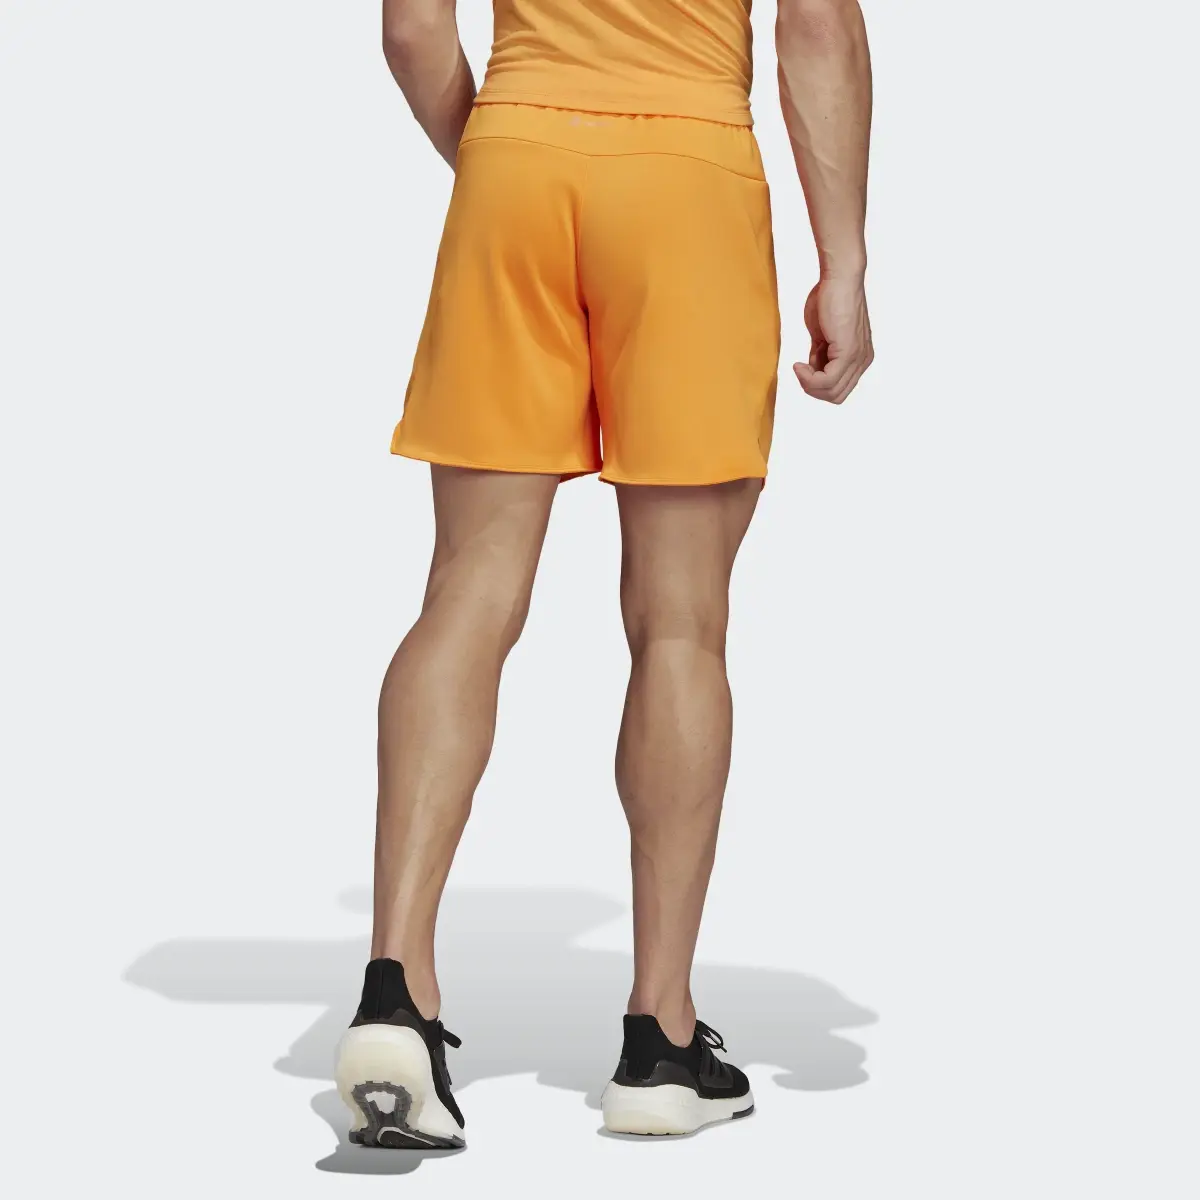 Adidas Designed for Training Shorts. 2